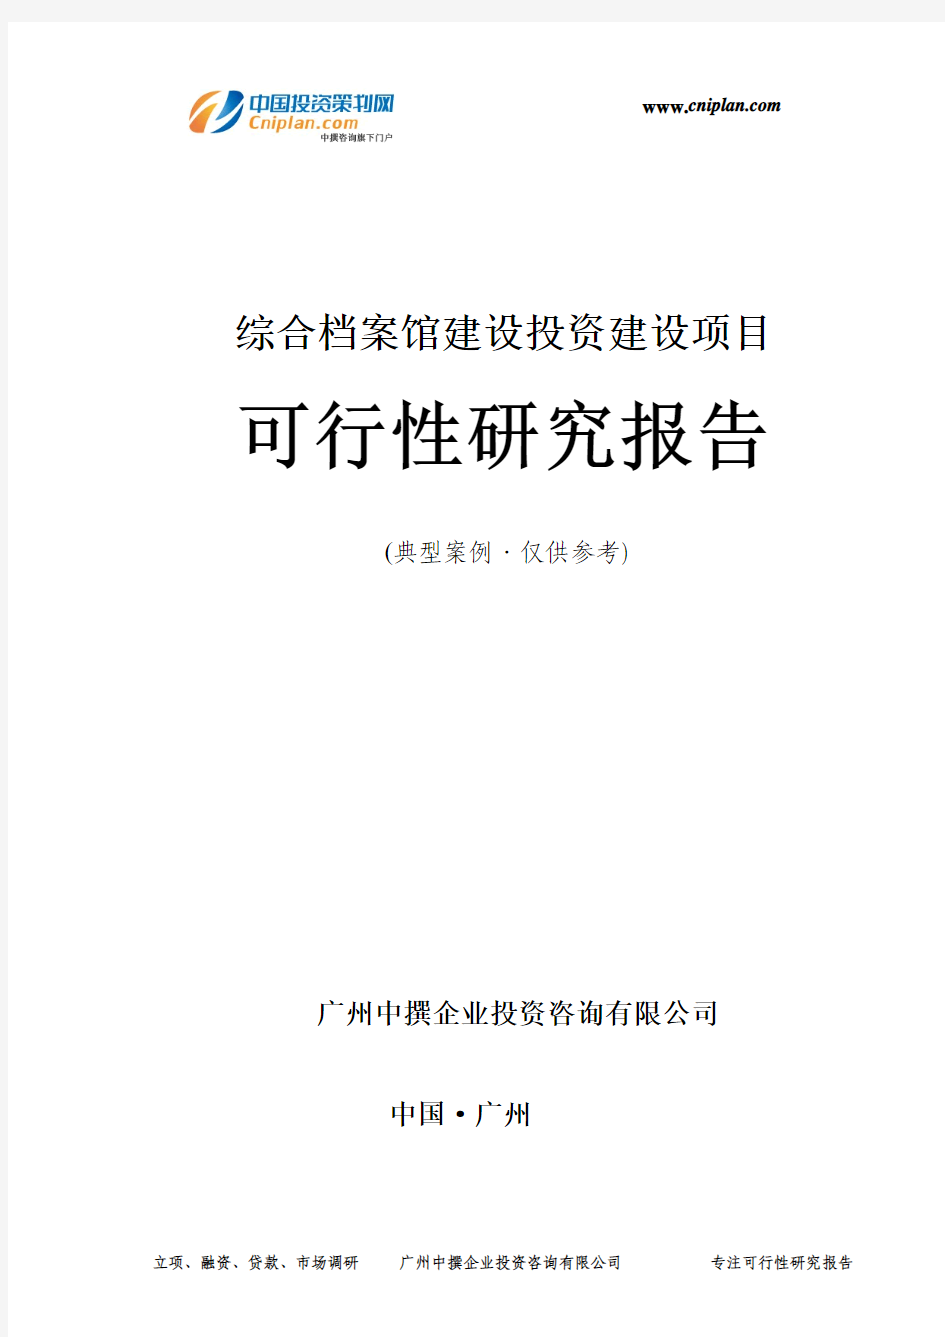 综合档案馆建设投资建设项目可行性研究报告-广州中撰咨询